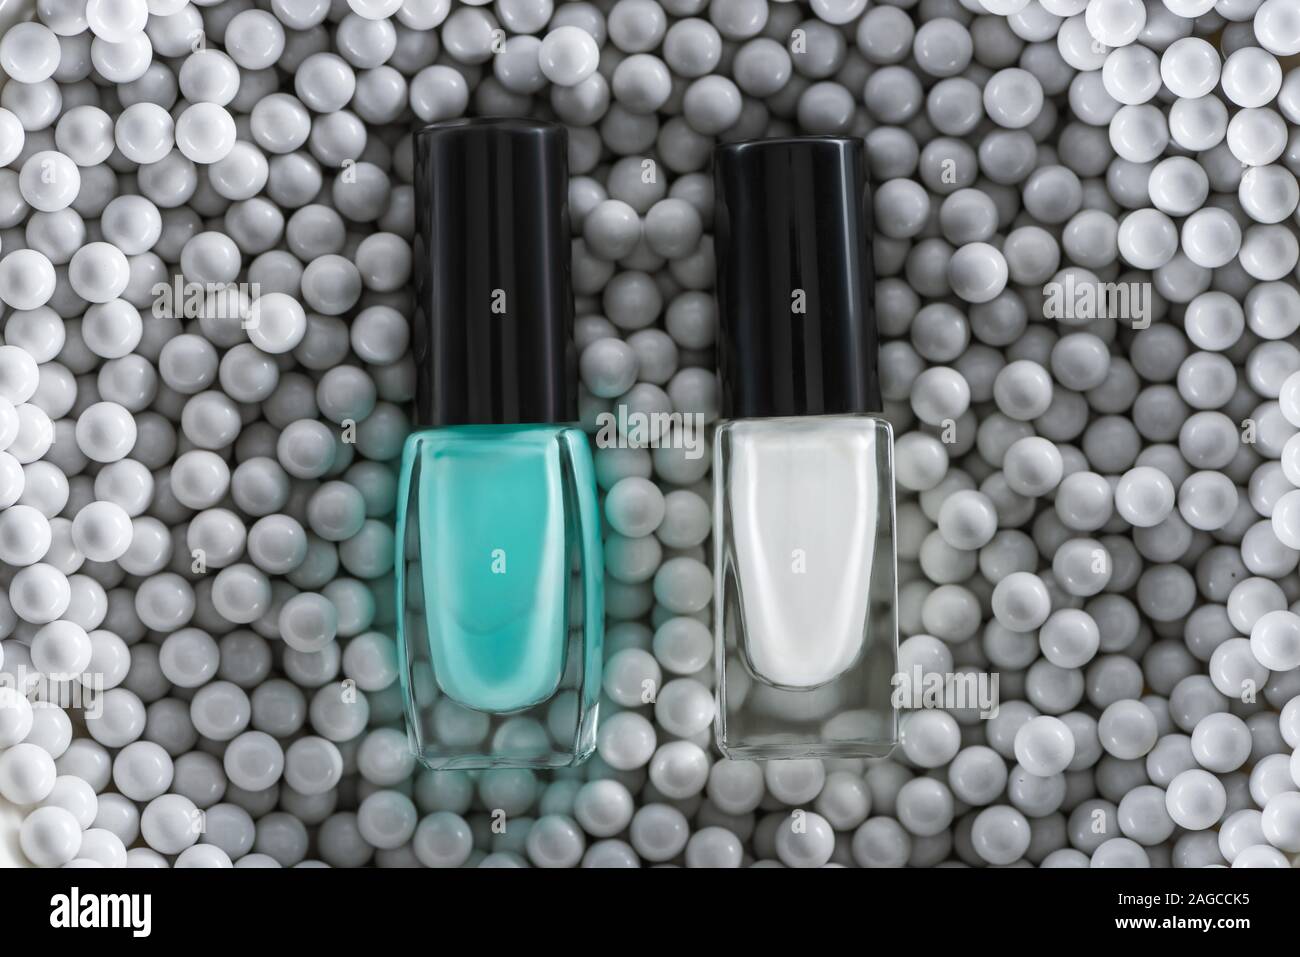 Vista superiore del bianco e del blu per unghie in bottiglie in grigio perle decorative Foto Stock